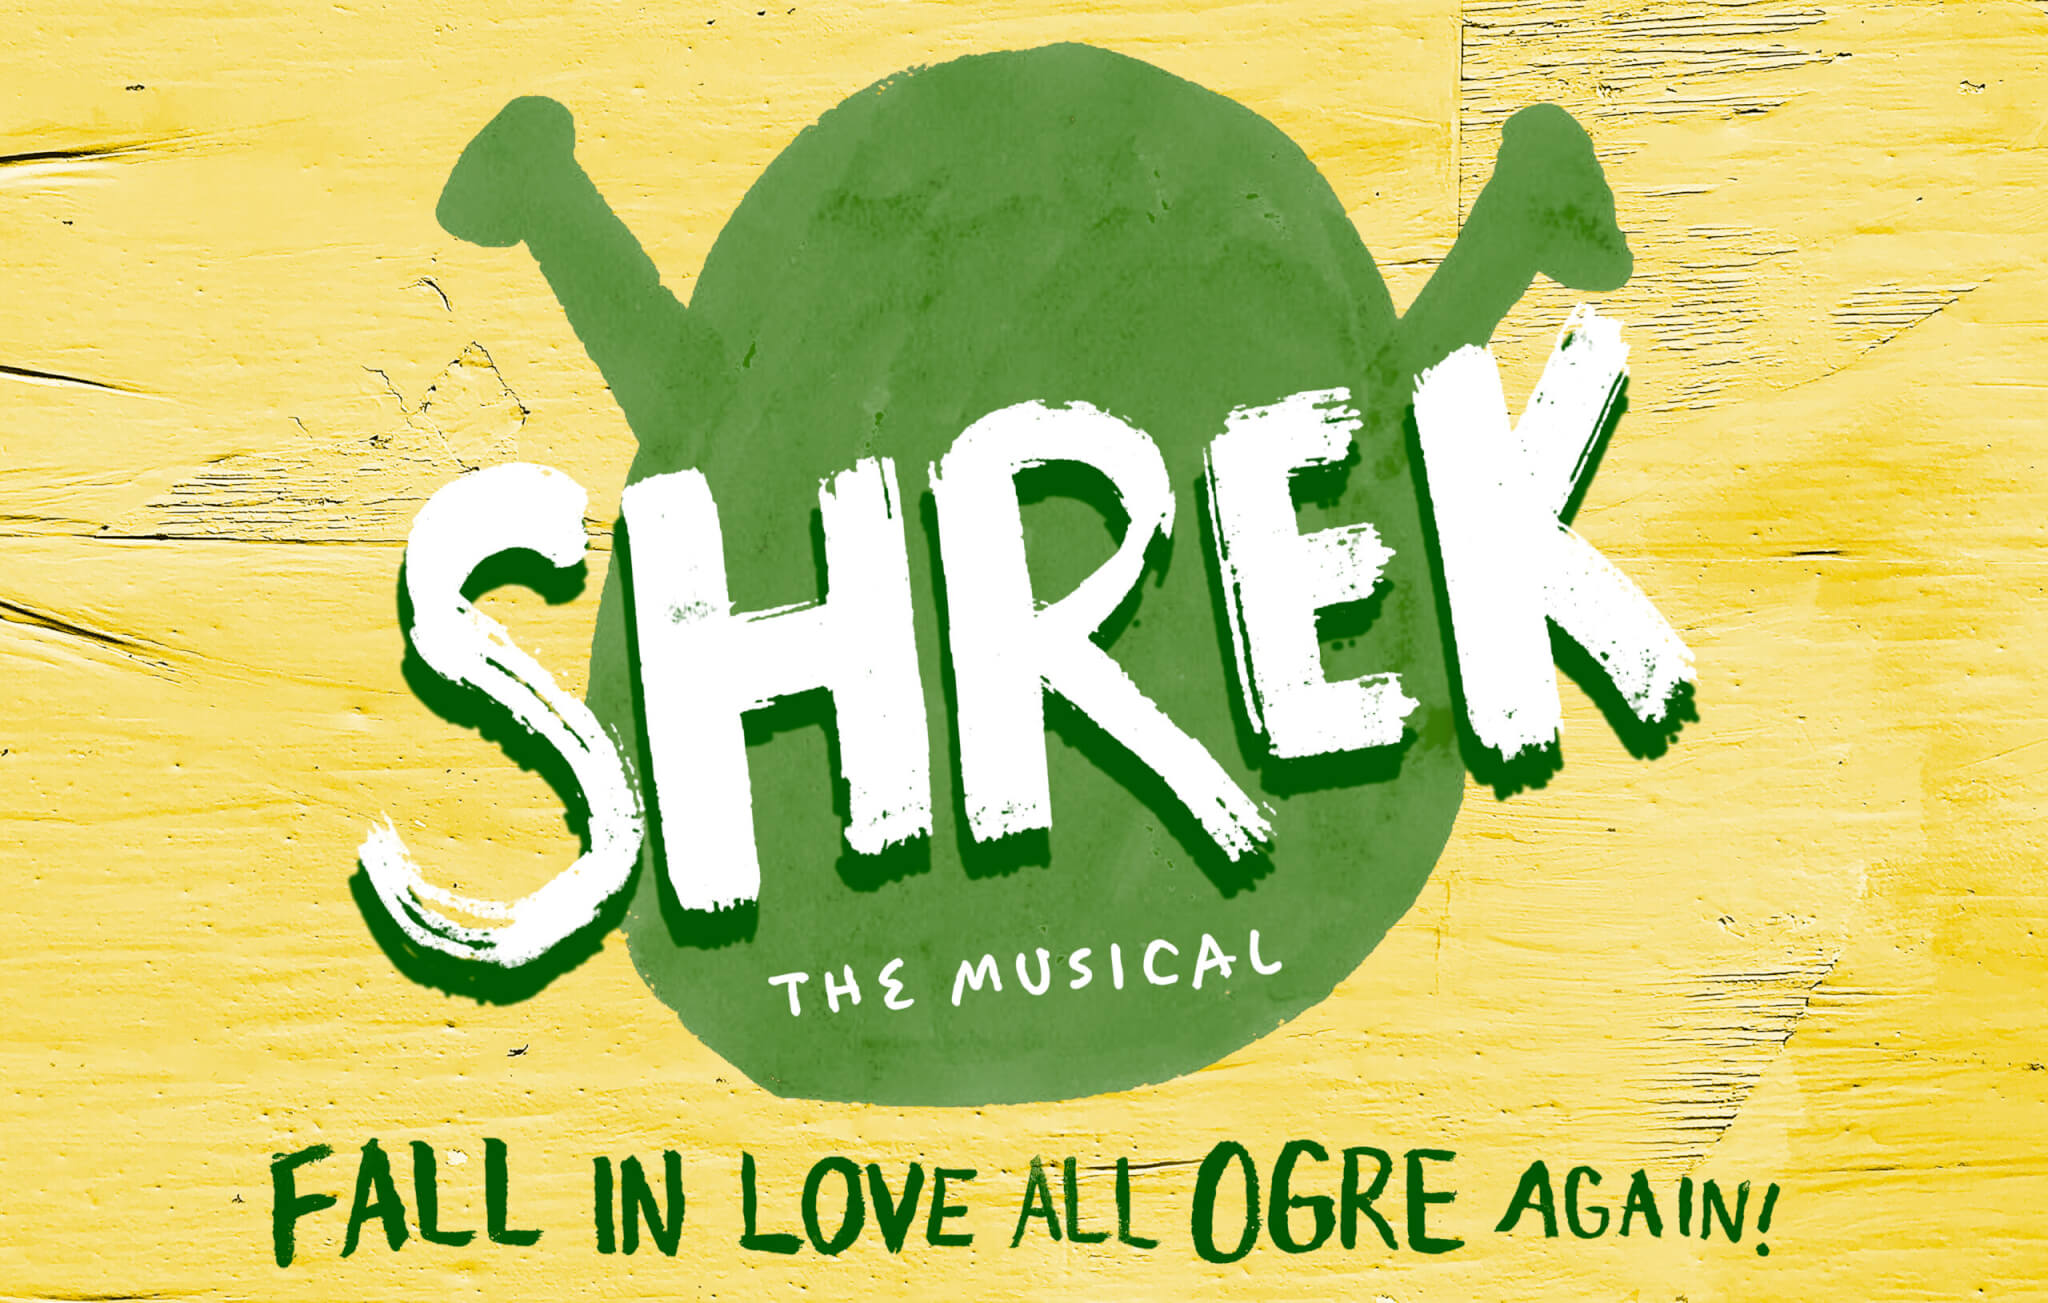 Shrek The Musical, fall in love all ogre again!